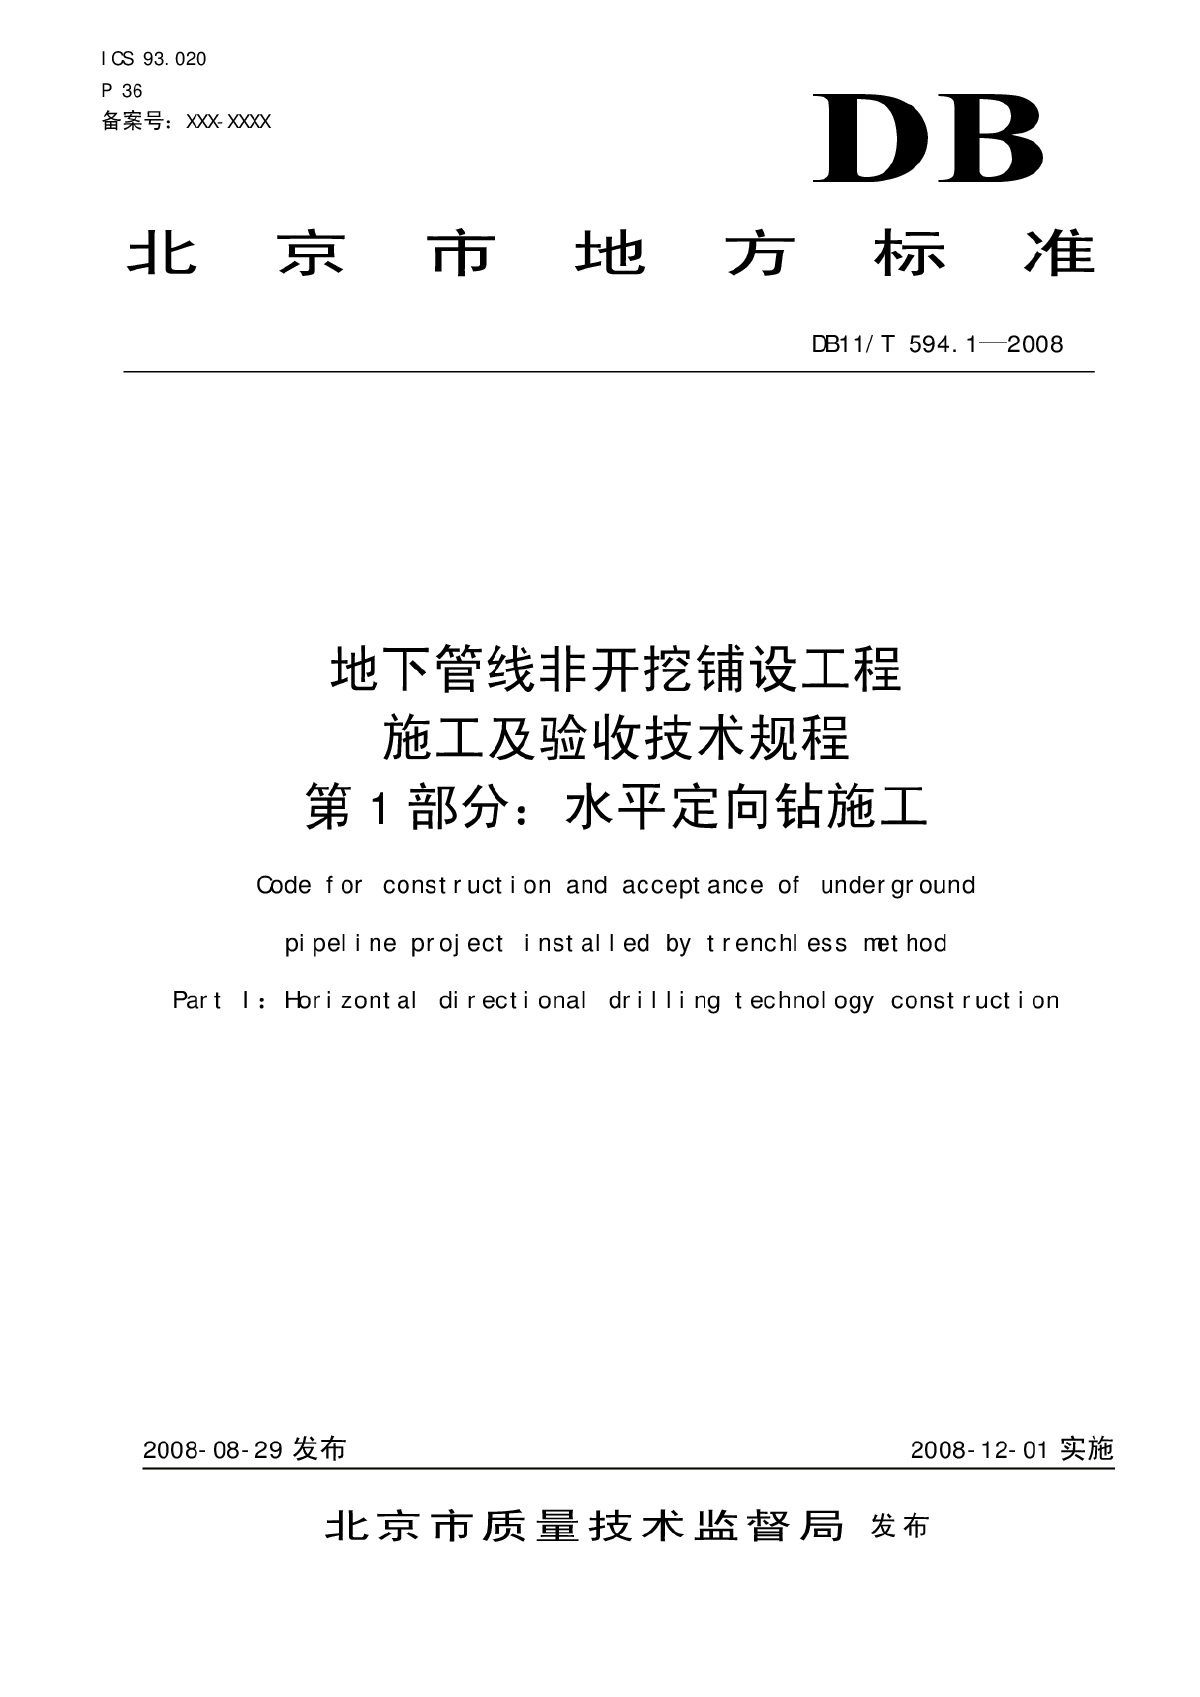 北京牵引管规程DB11/T 594.1-2008-图一